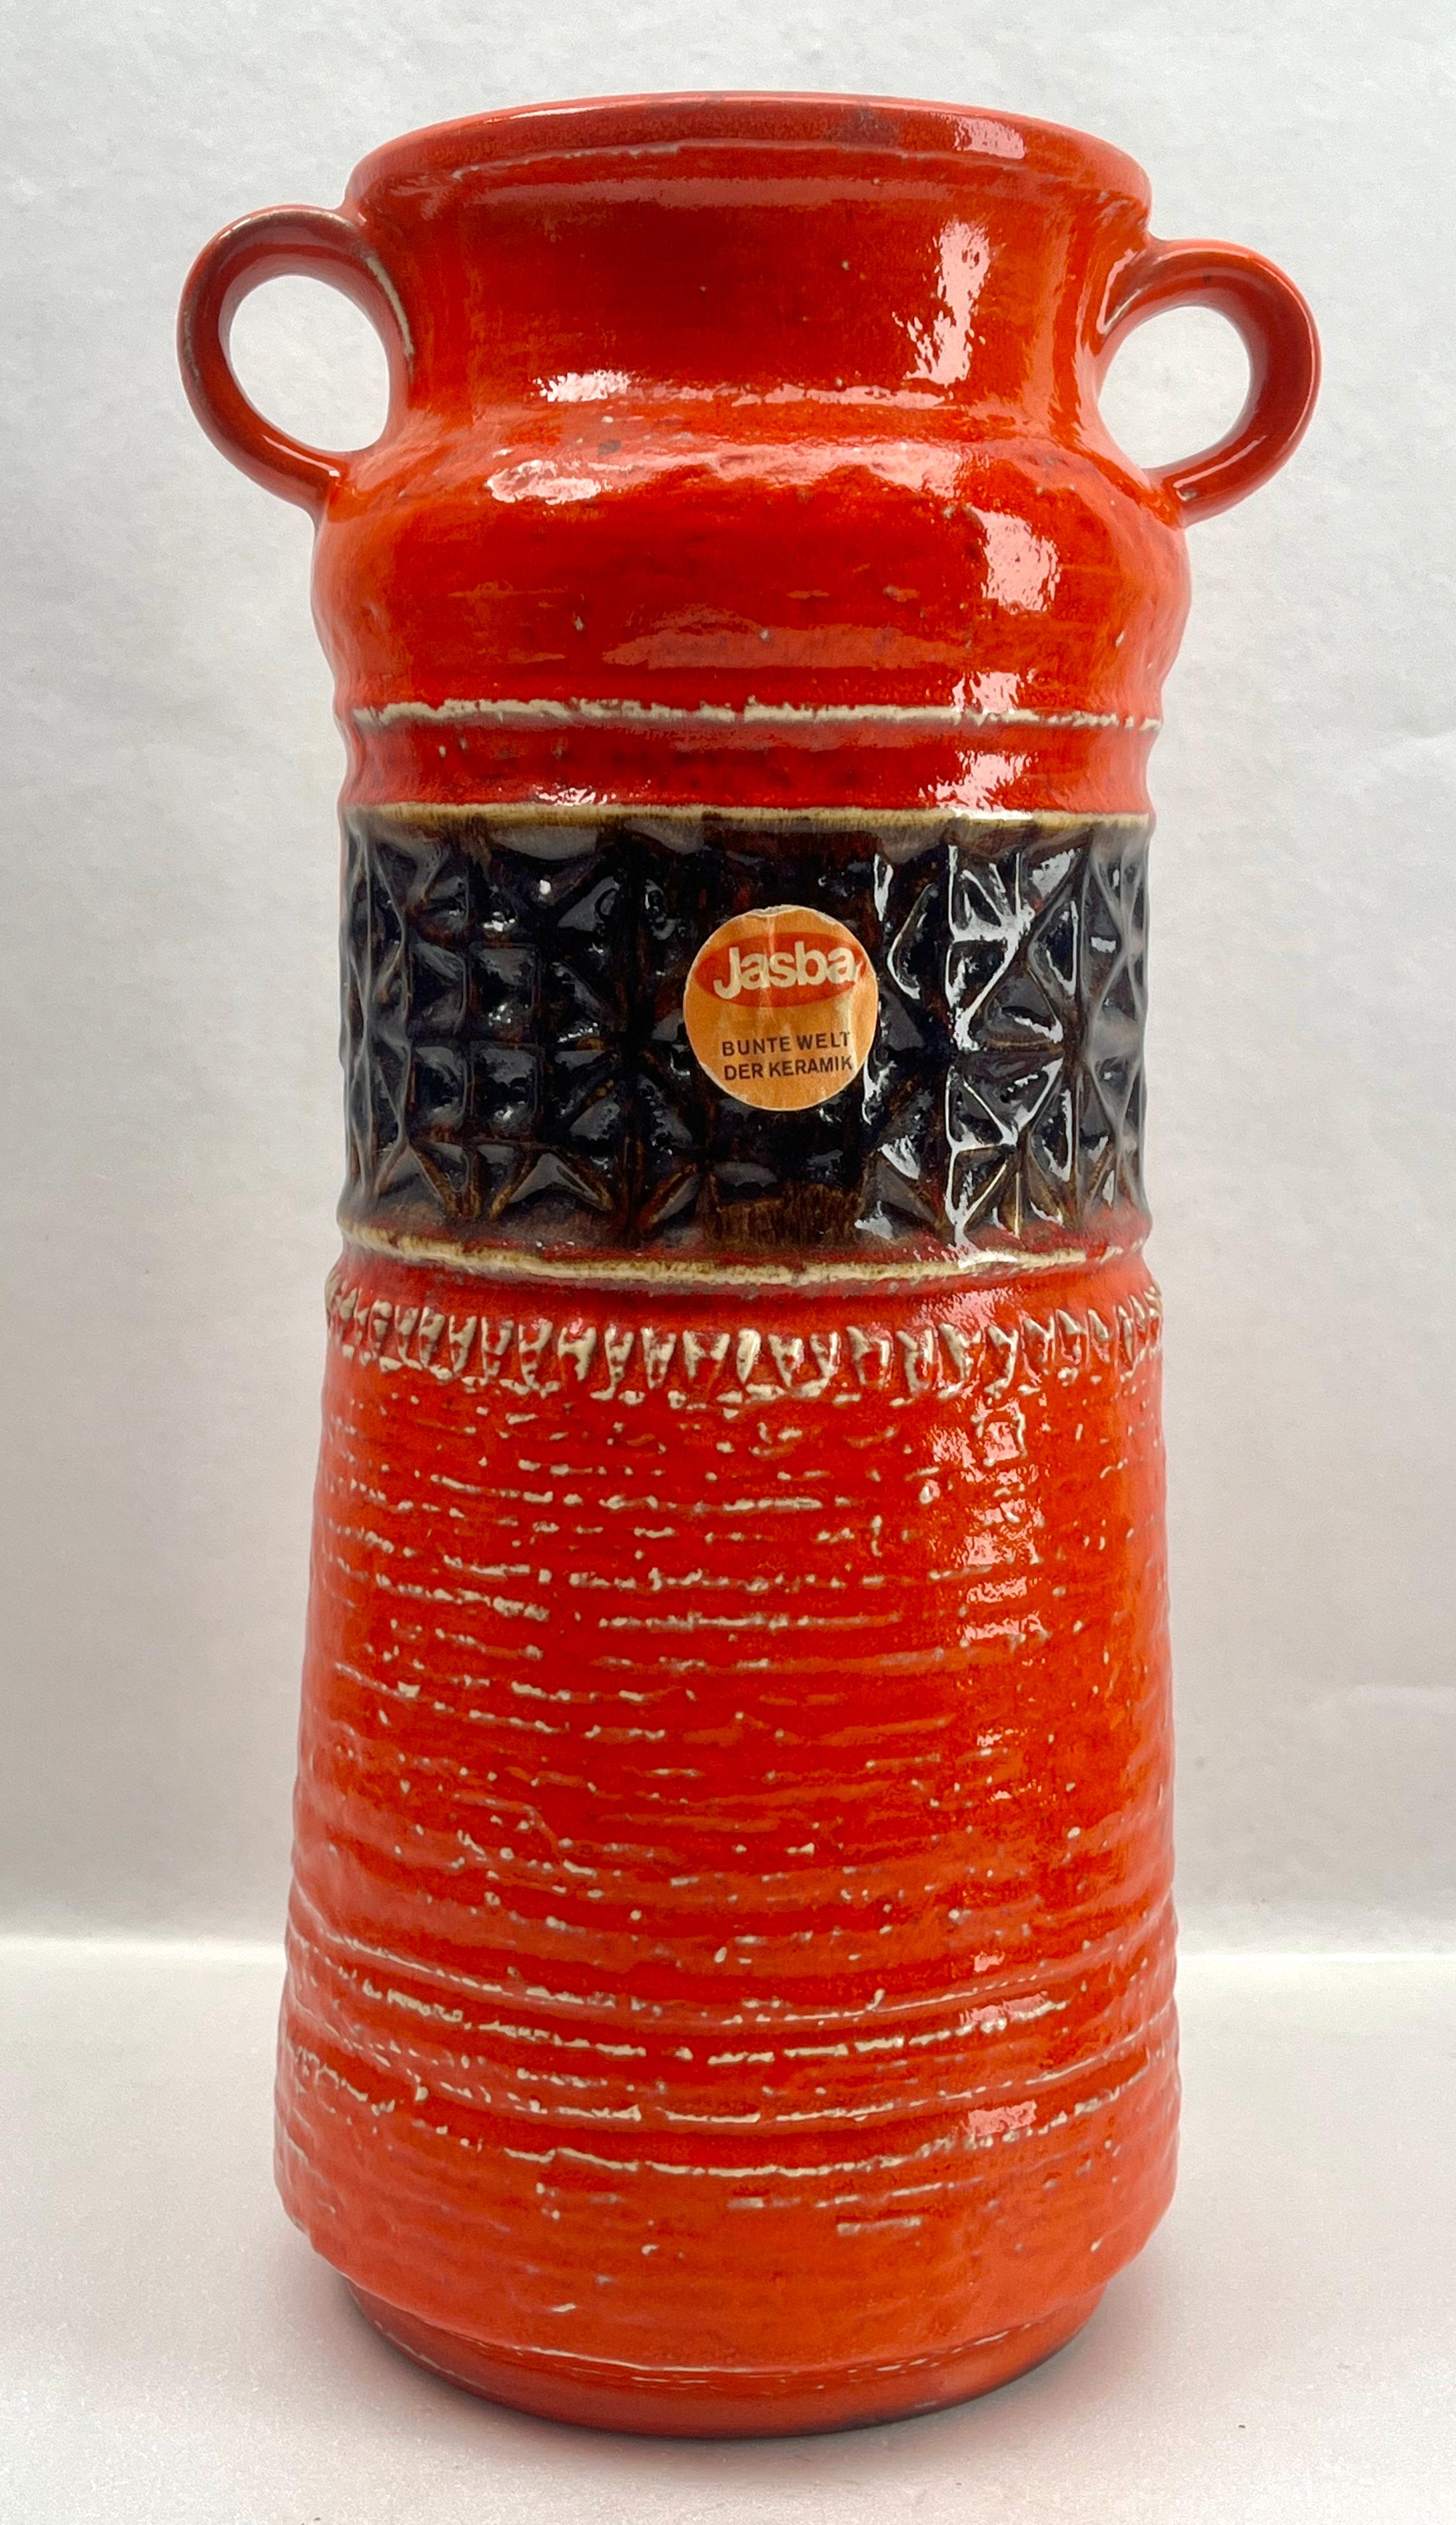 Ce vase vintage original de Jasba a été produit dans les années 1970 en Allemagne. Il est fabriqué en céramique.
Le fond est marqué du numéro de série du vase N 10111 35 Handarbeit.
Un design direct et minimaliste de l'ère du design des années 1960.